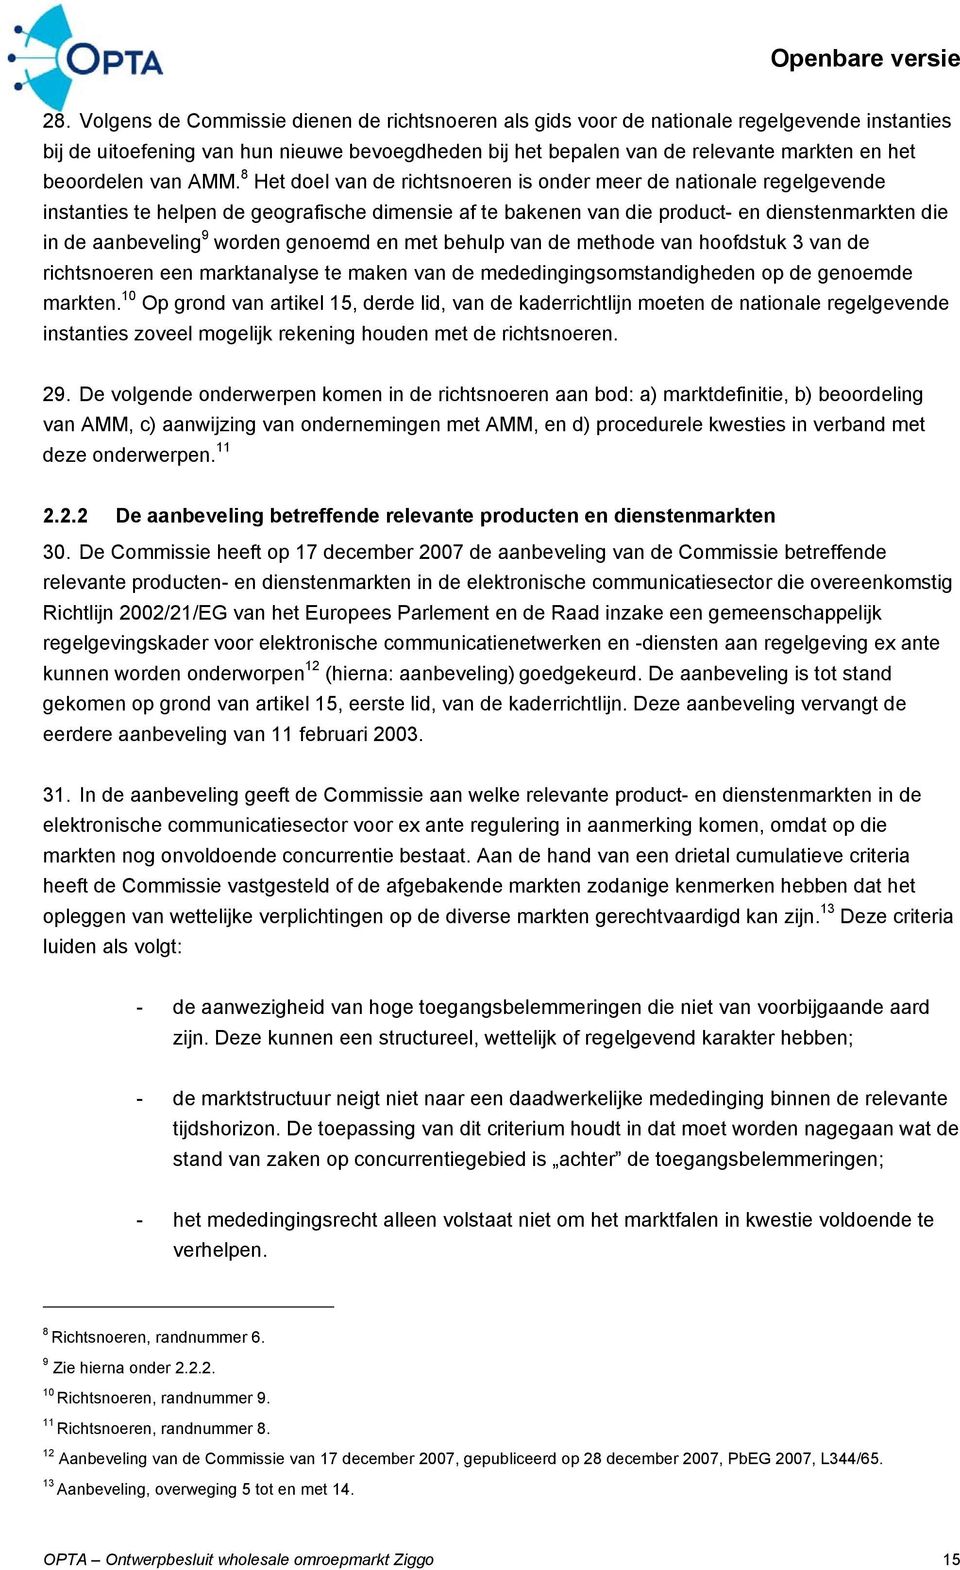 8 Het doel van de richtsnoeren is onder meer de nationale regelgevende instanties te helpen de geografische dimensie af te bakenen van die product- en dienstenmarkten die in de aanbeveling 9 worden